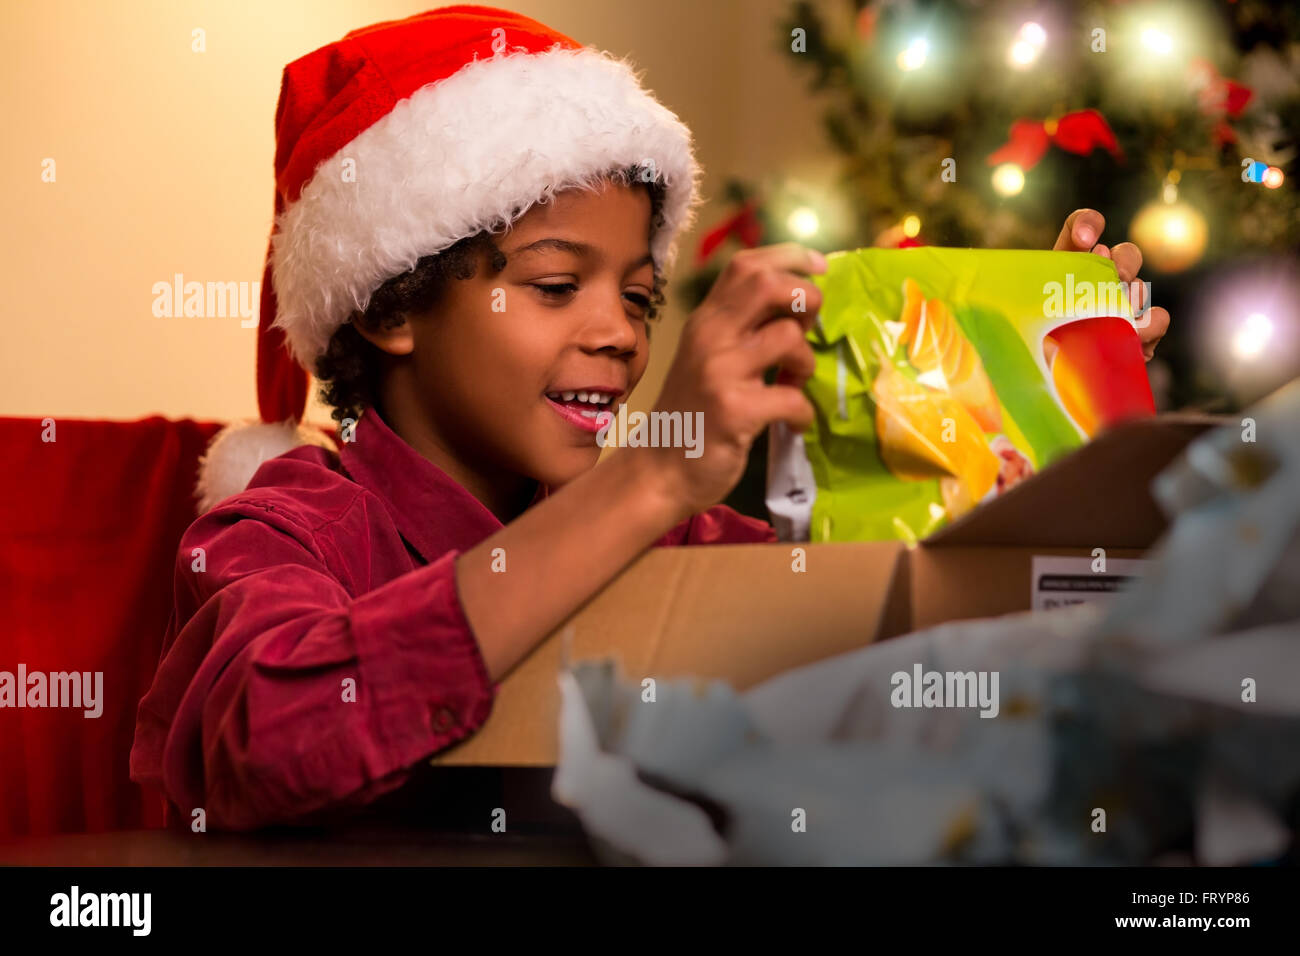 Glücklich Darkskinned junge öffnet vorhanden. Schwarze Kind öffnen Weihnachtsgeschenk. Genau das, was ich wollte. Weihnachten bringt Freude. Stockfoto